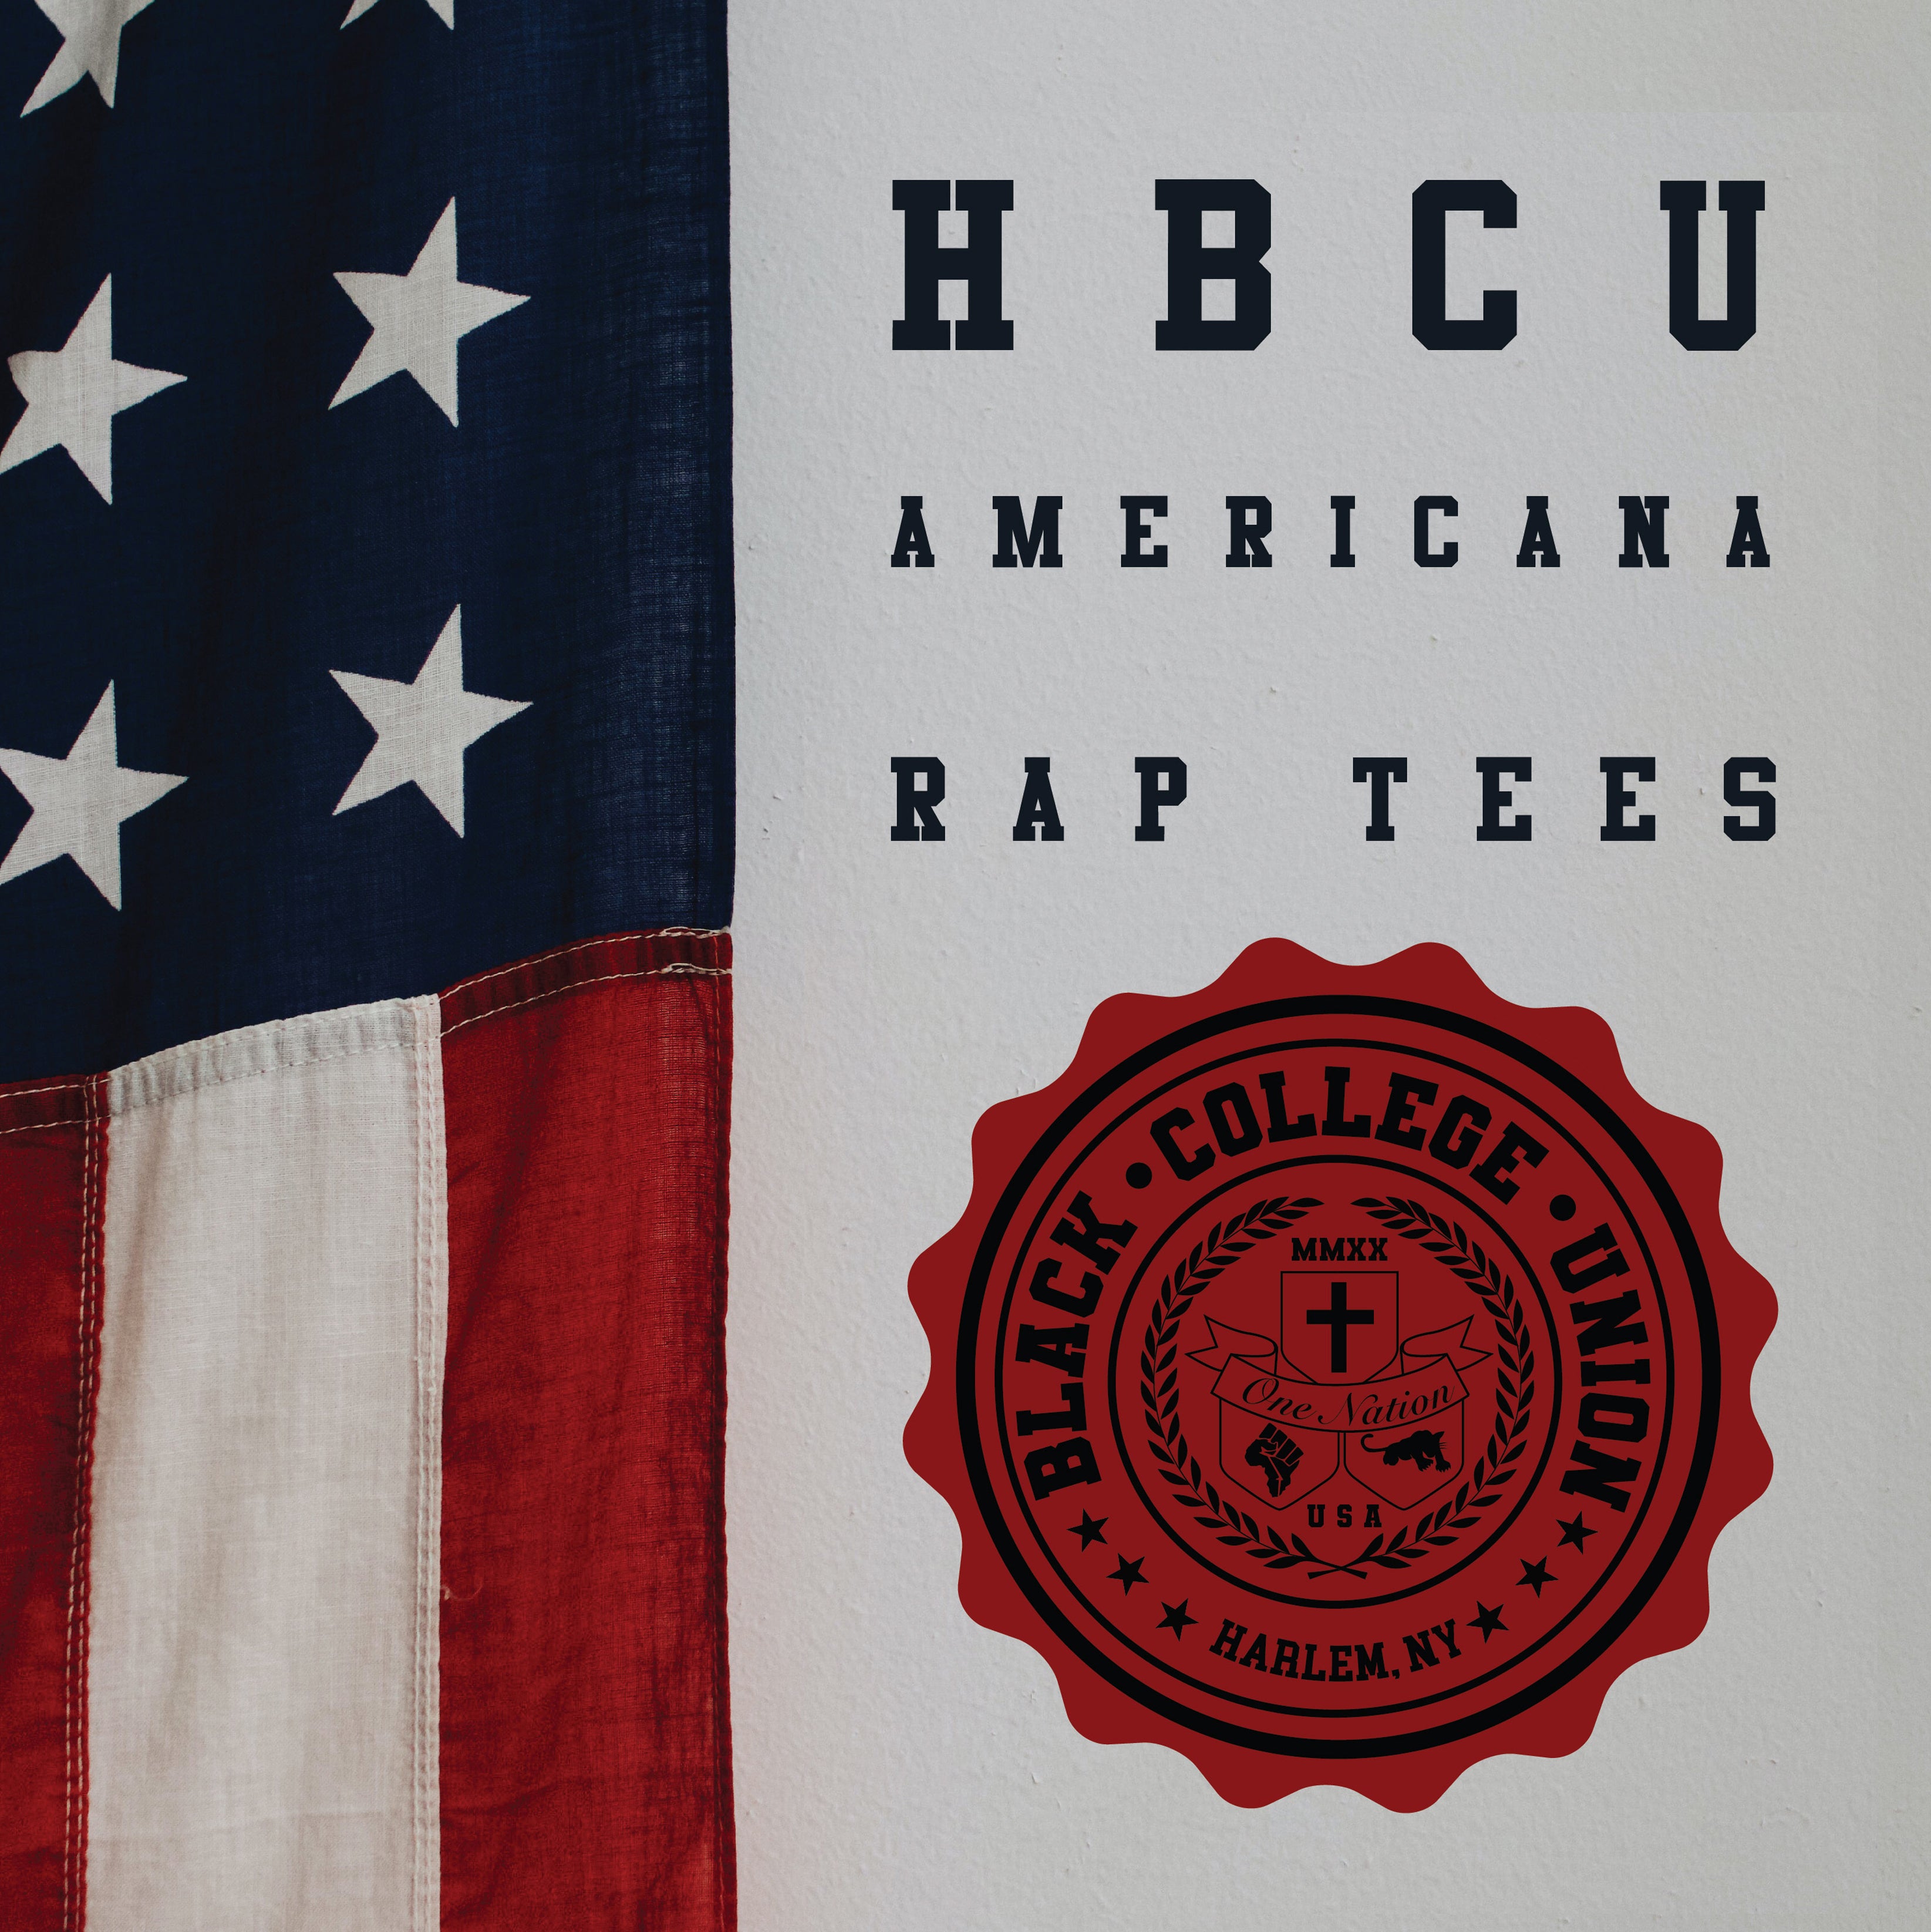 BCU X Champion Original HBCU Americana Rap Tee - Albany State